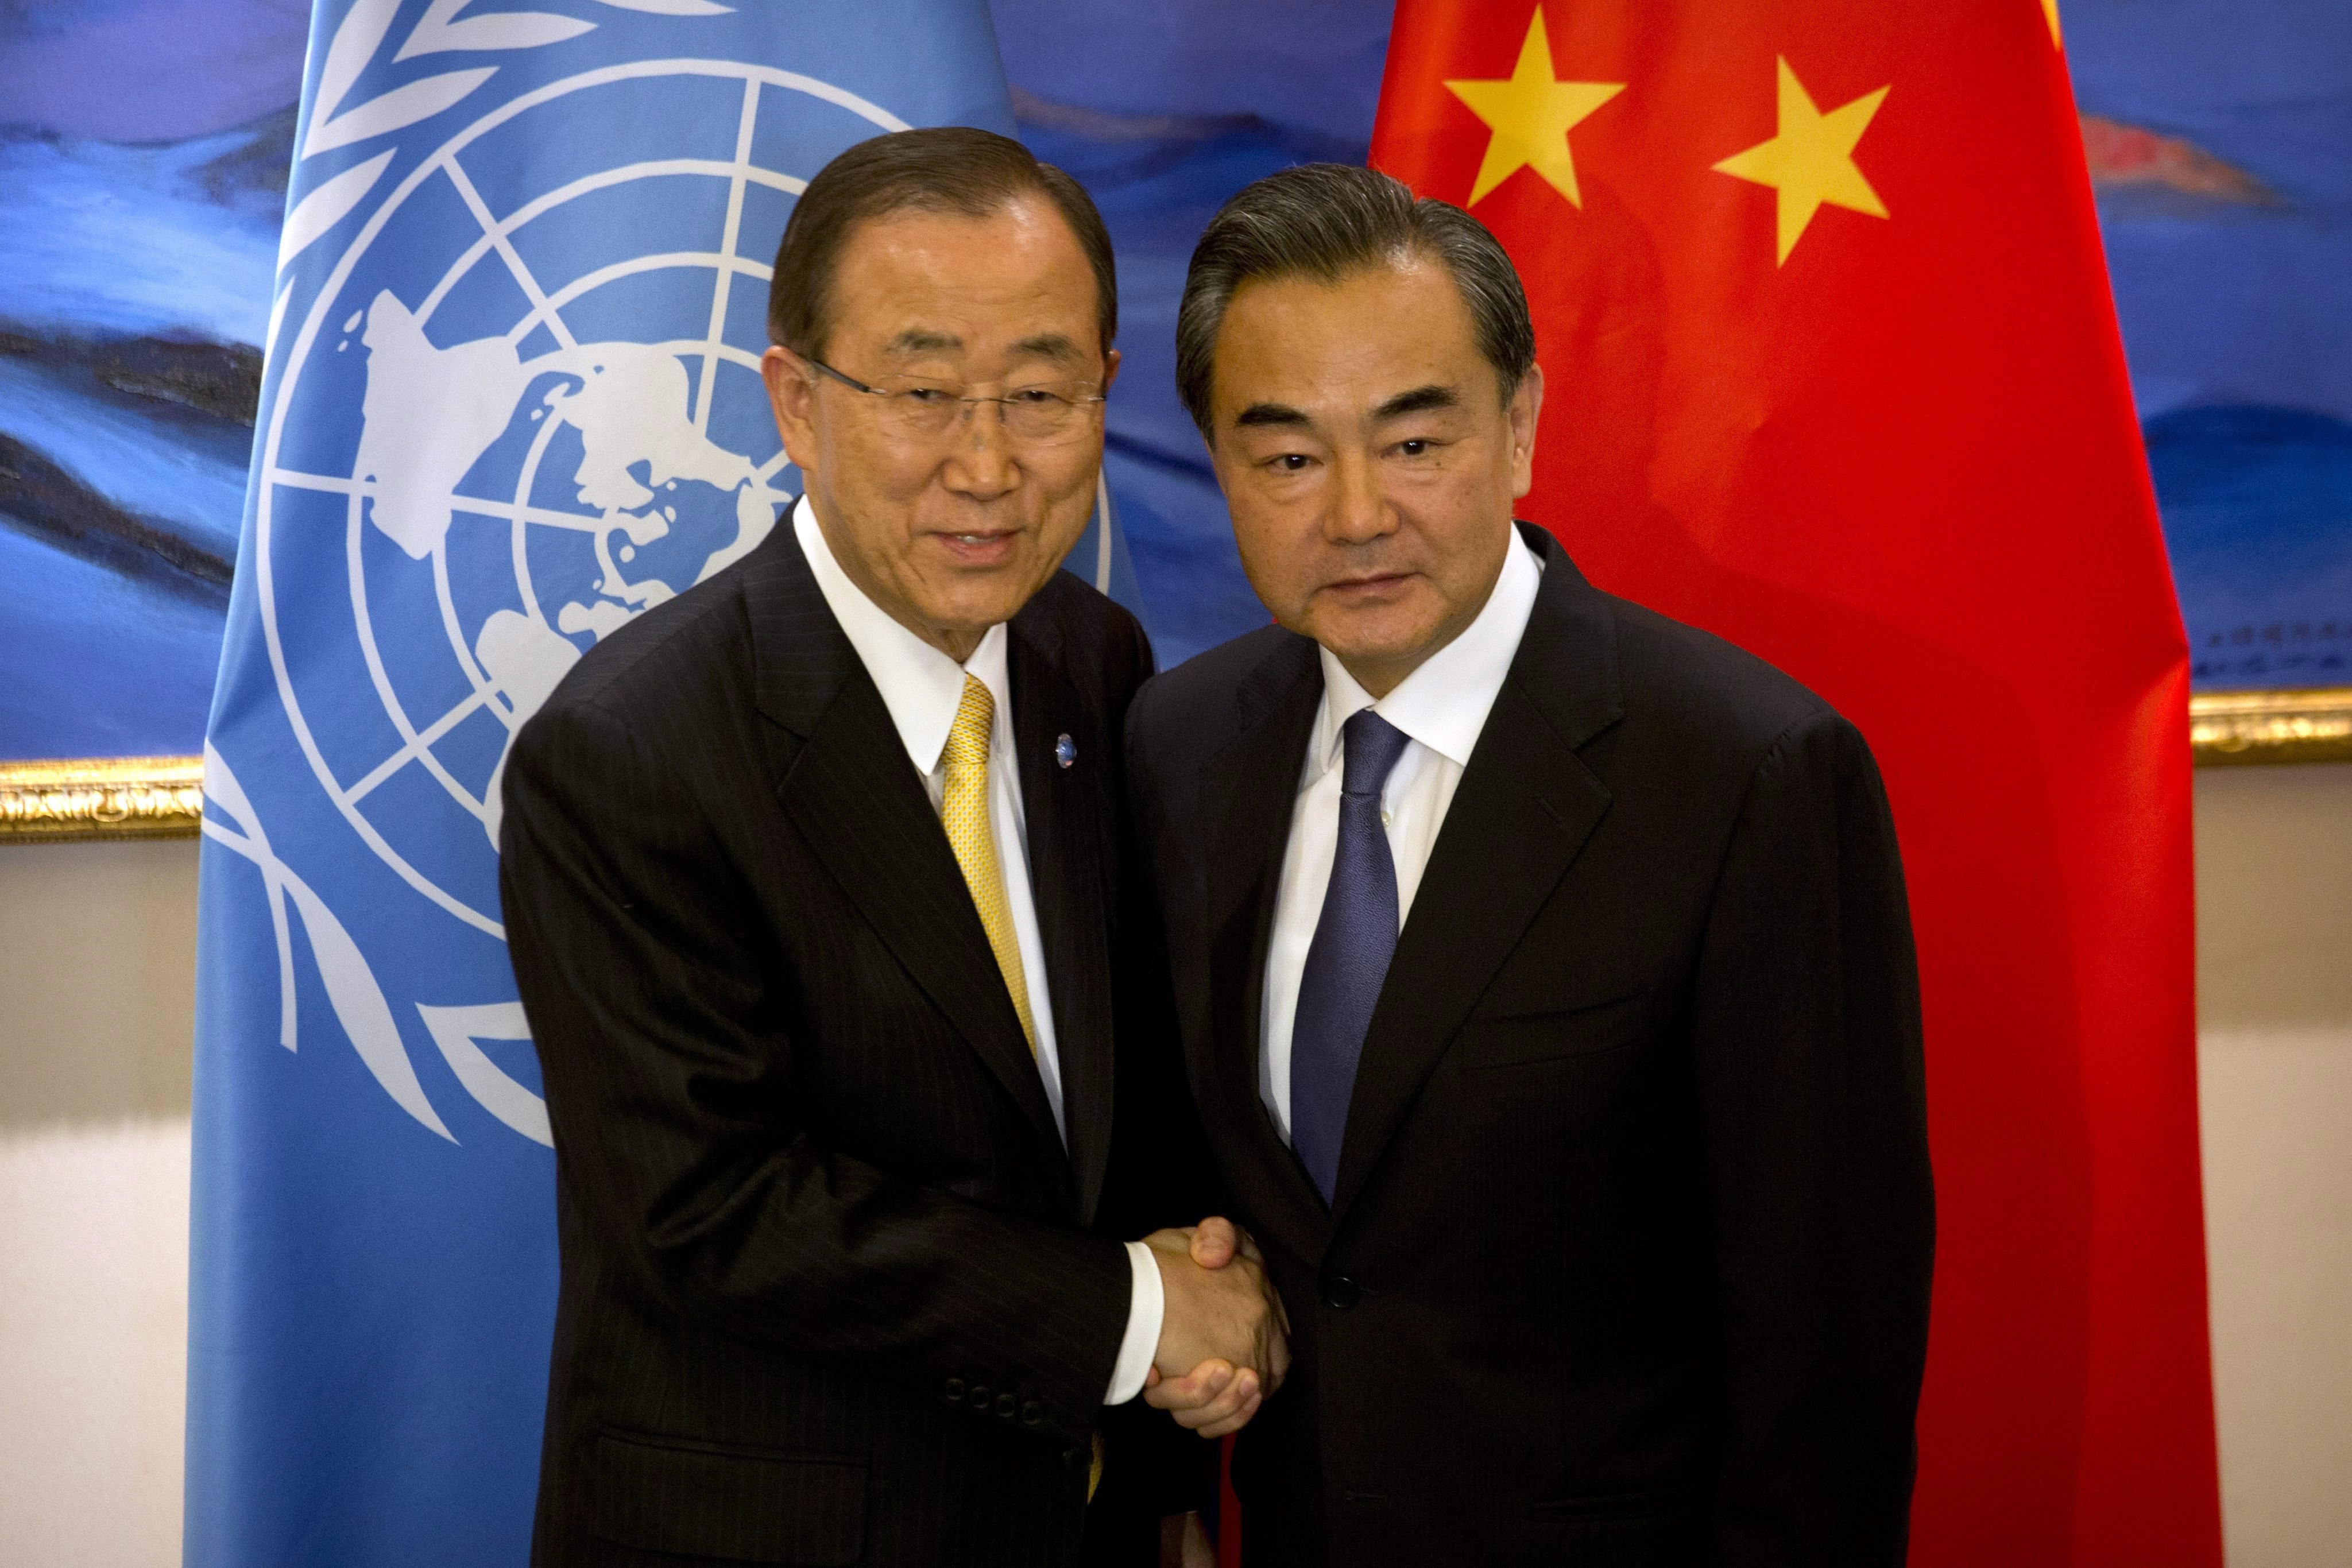 Ban Ki Mun a sajtószabadság és a civil önszerveződés hasznosságáról győzködi a kínai elnököt :DDDDDDDDDDD